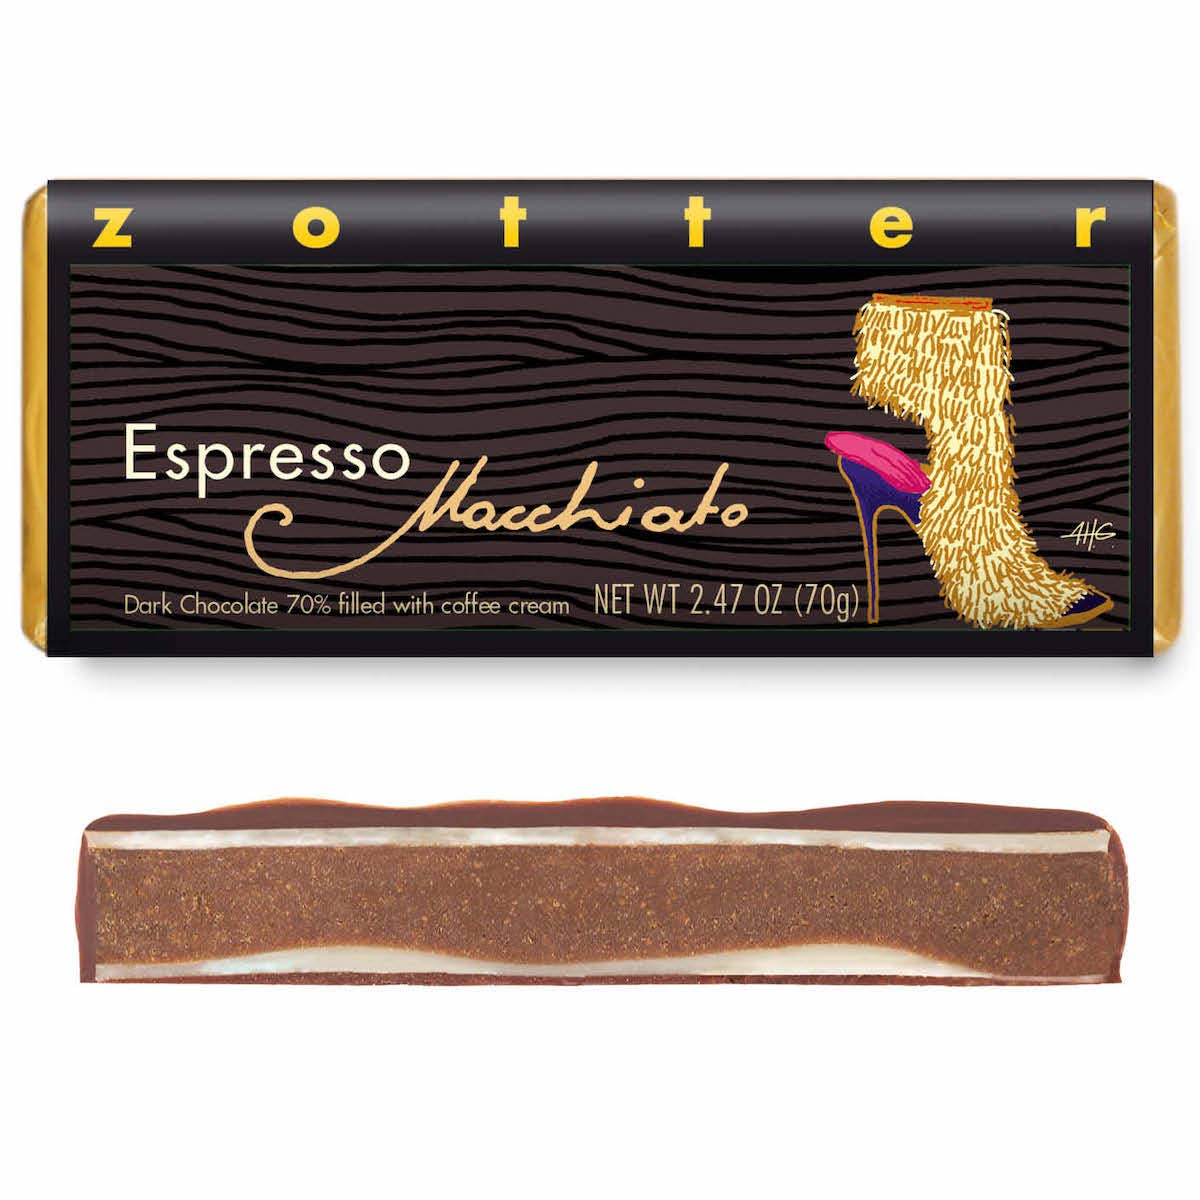 Espresso "Macchiato" (Hand-scooped Chocolate)